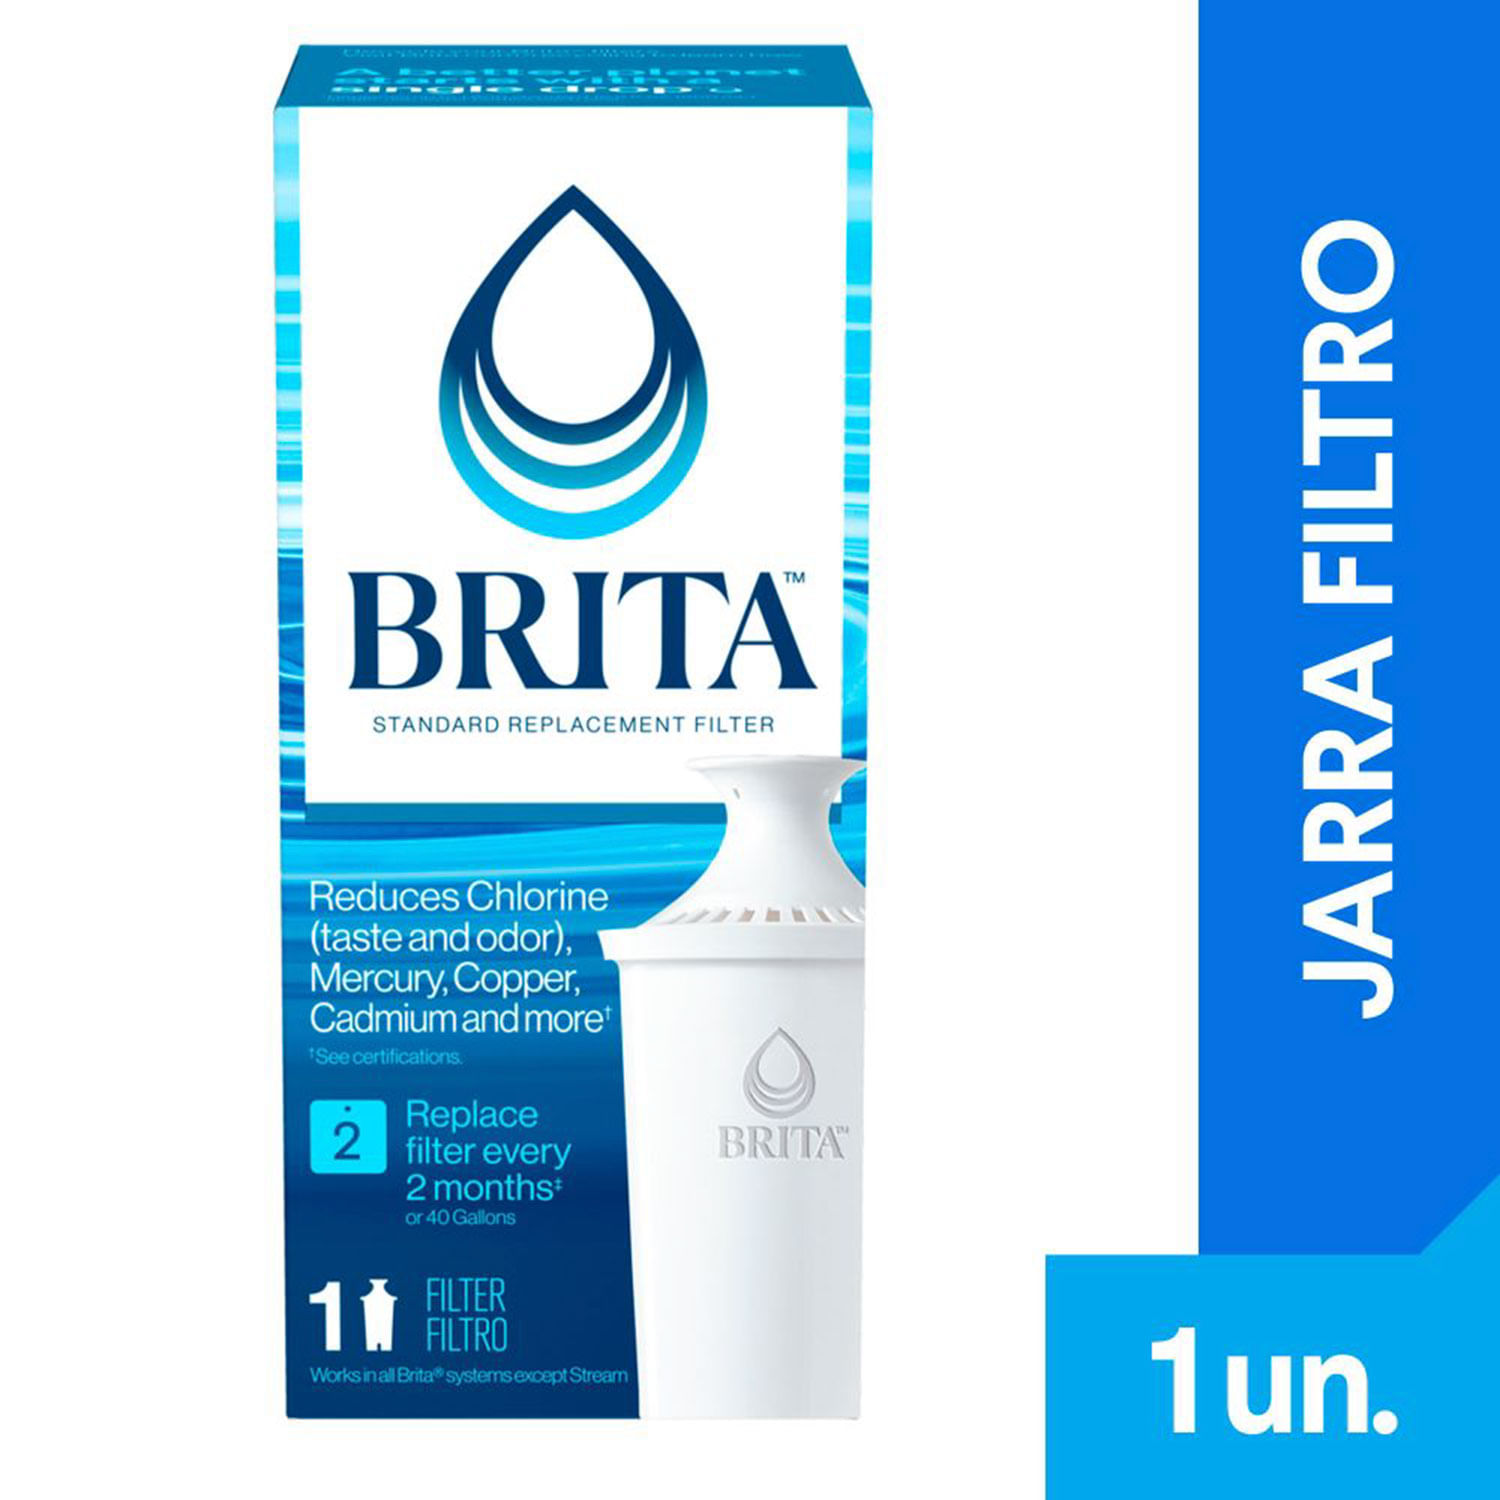 BRITA Filtro De Agua Pitcher Para Jarra X3un Marca Brita